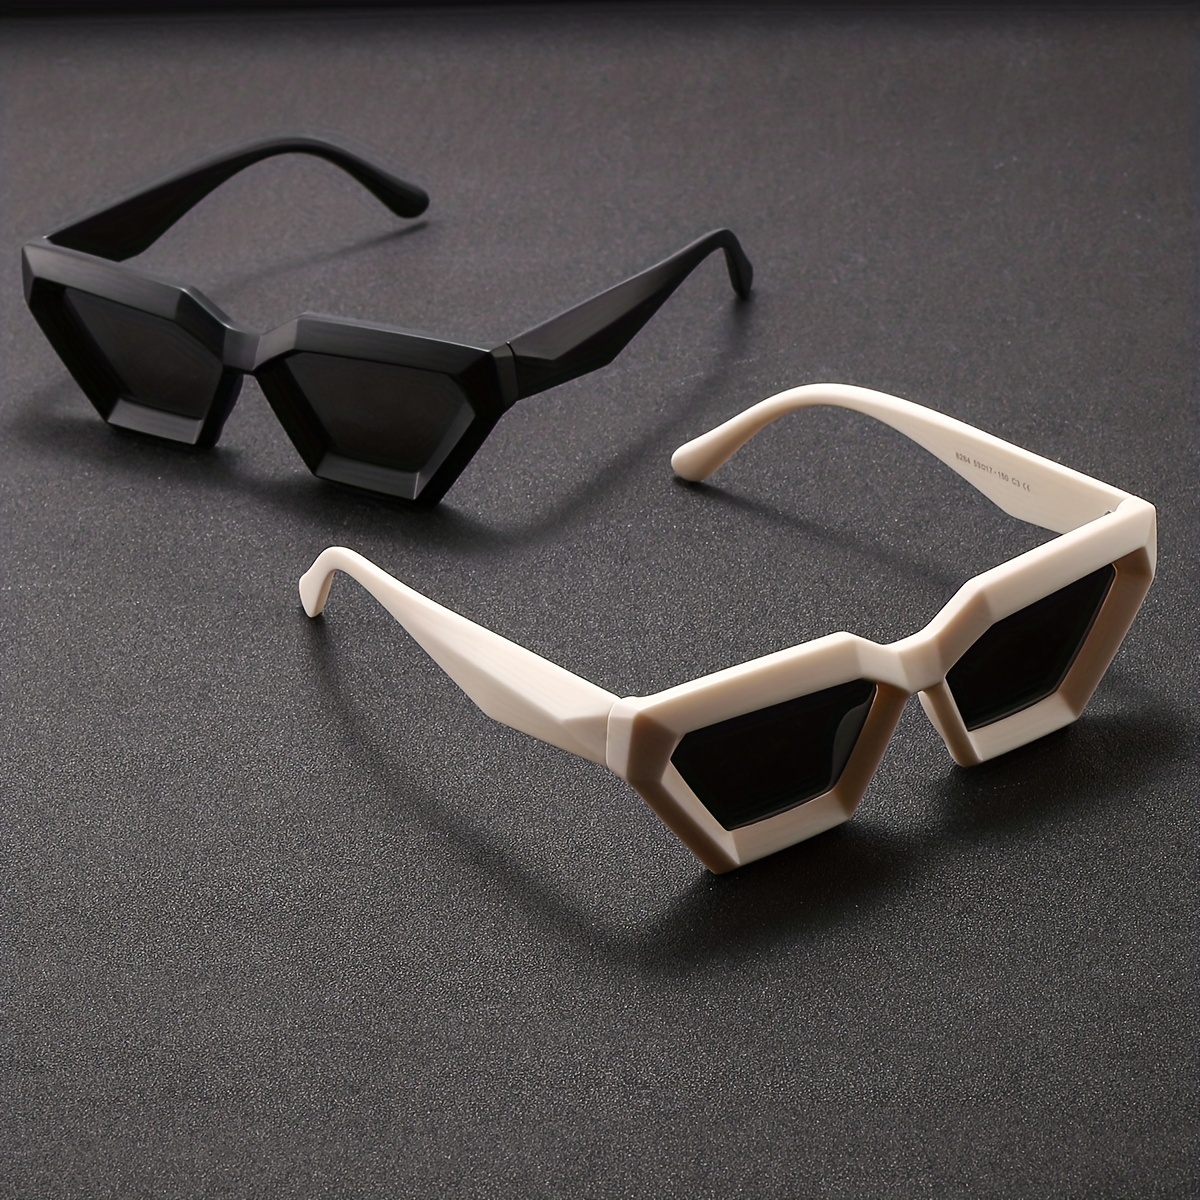 

Lunettes de mode polygonales pour hommes, lunettes de mode pour couples, lunettes de mode cool et élégantes, choix idéal pour des cadeaux